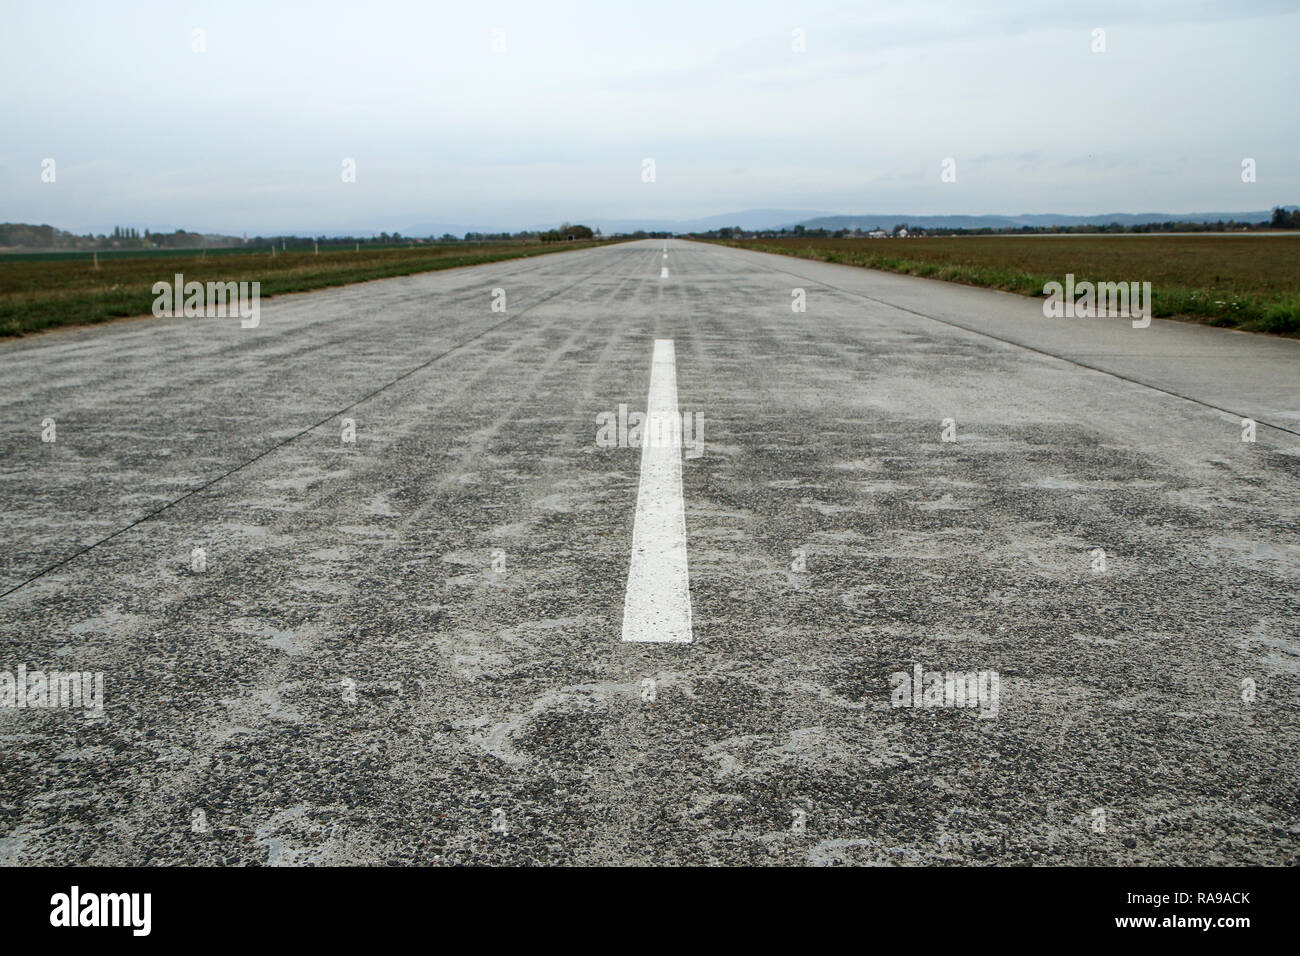 Ein Bild von einem leeren lange alte Landebahn von conrcrete Platten aus. Stockfoto